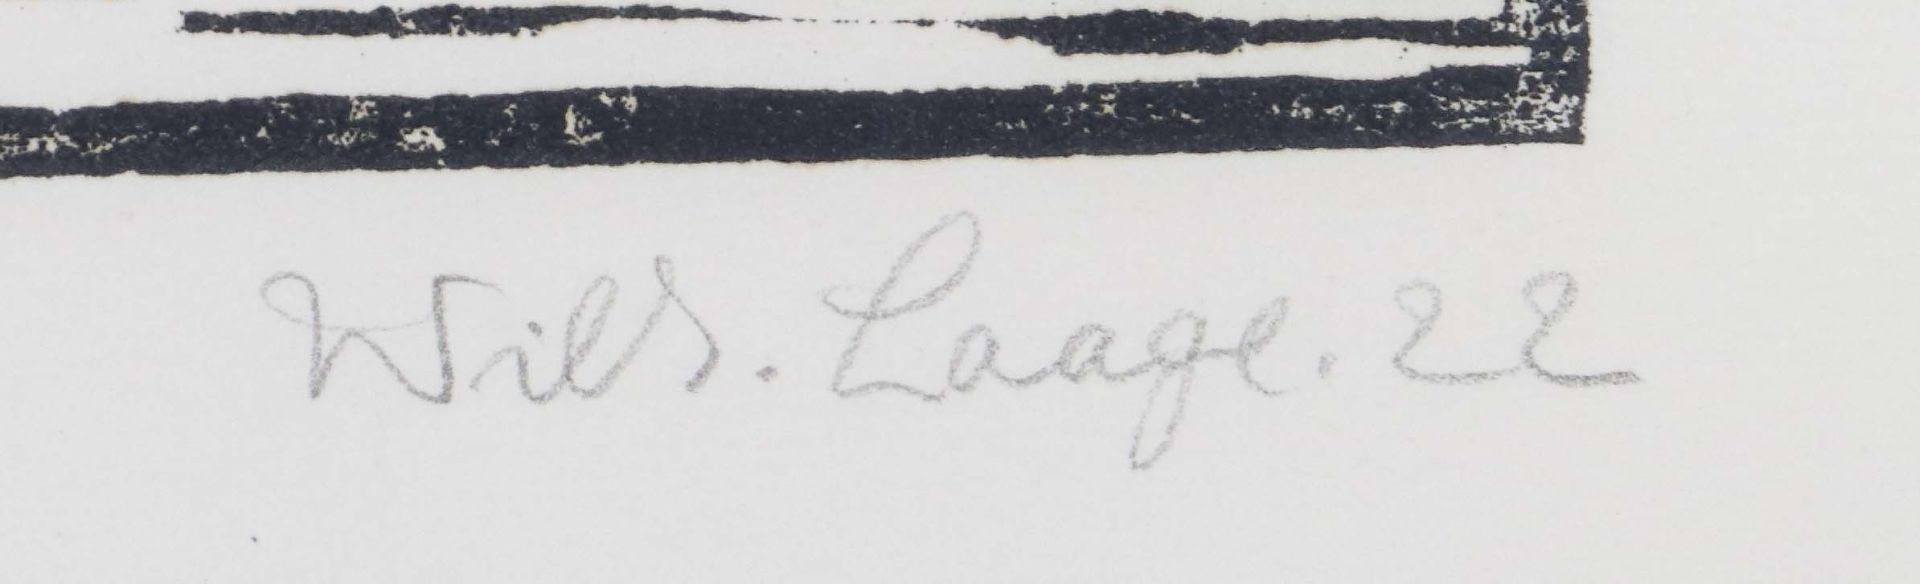 Laage, Wilhelm Stellingen 1868 - 1930 - Bild 3 aus 3